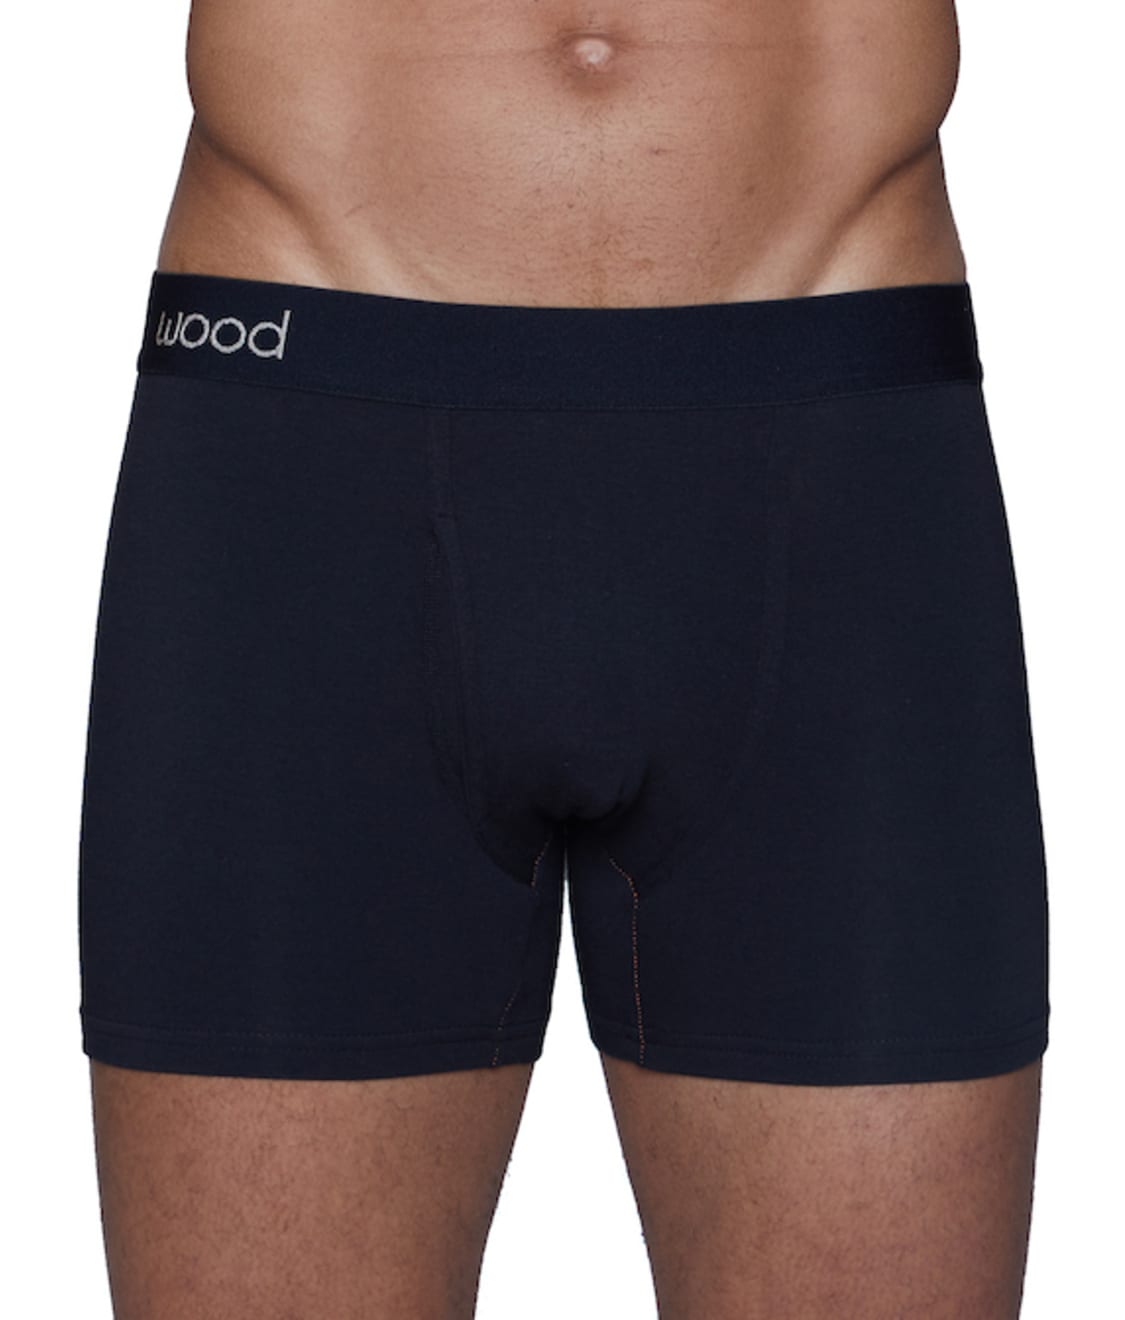 Wood Underwear: Modal Boxer Brief 4501T